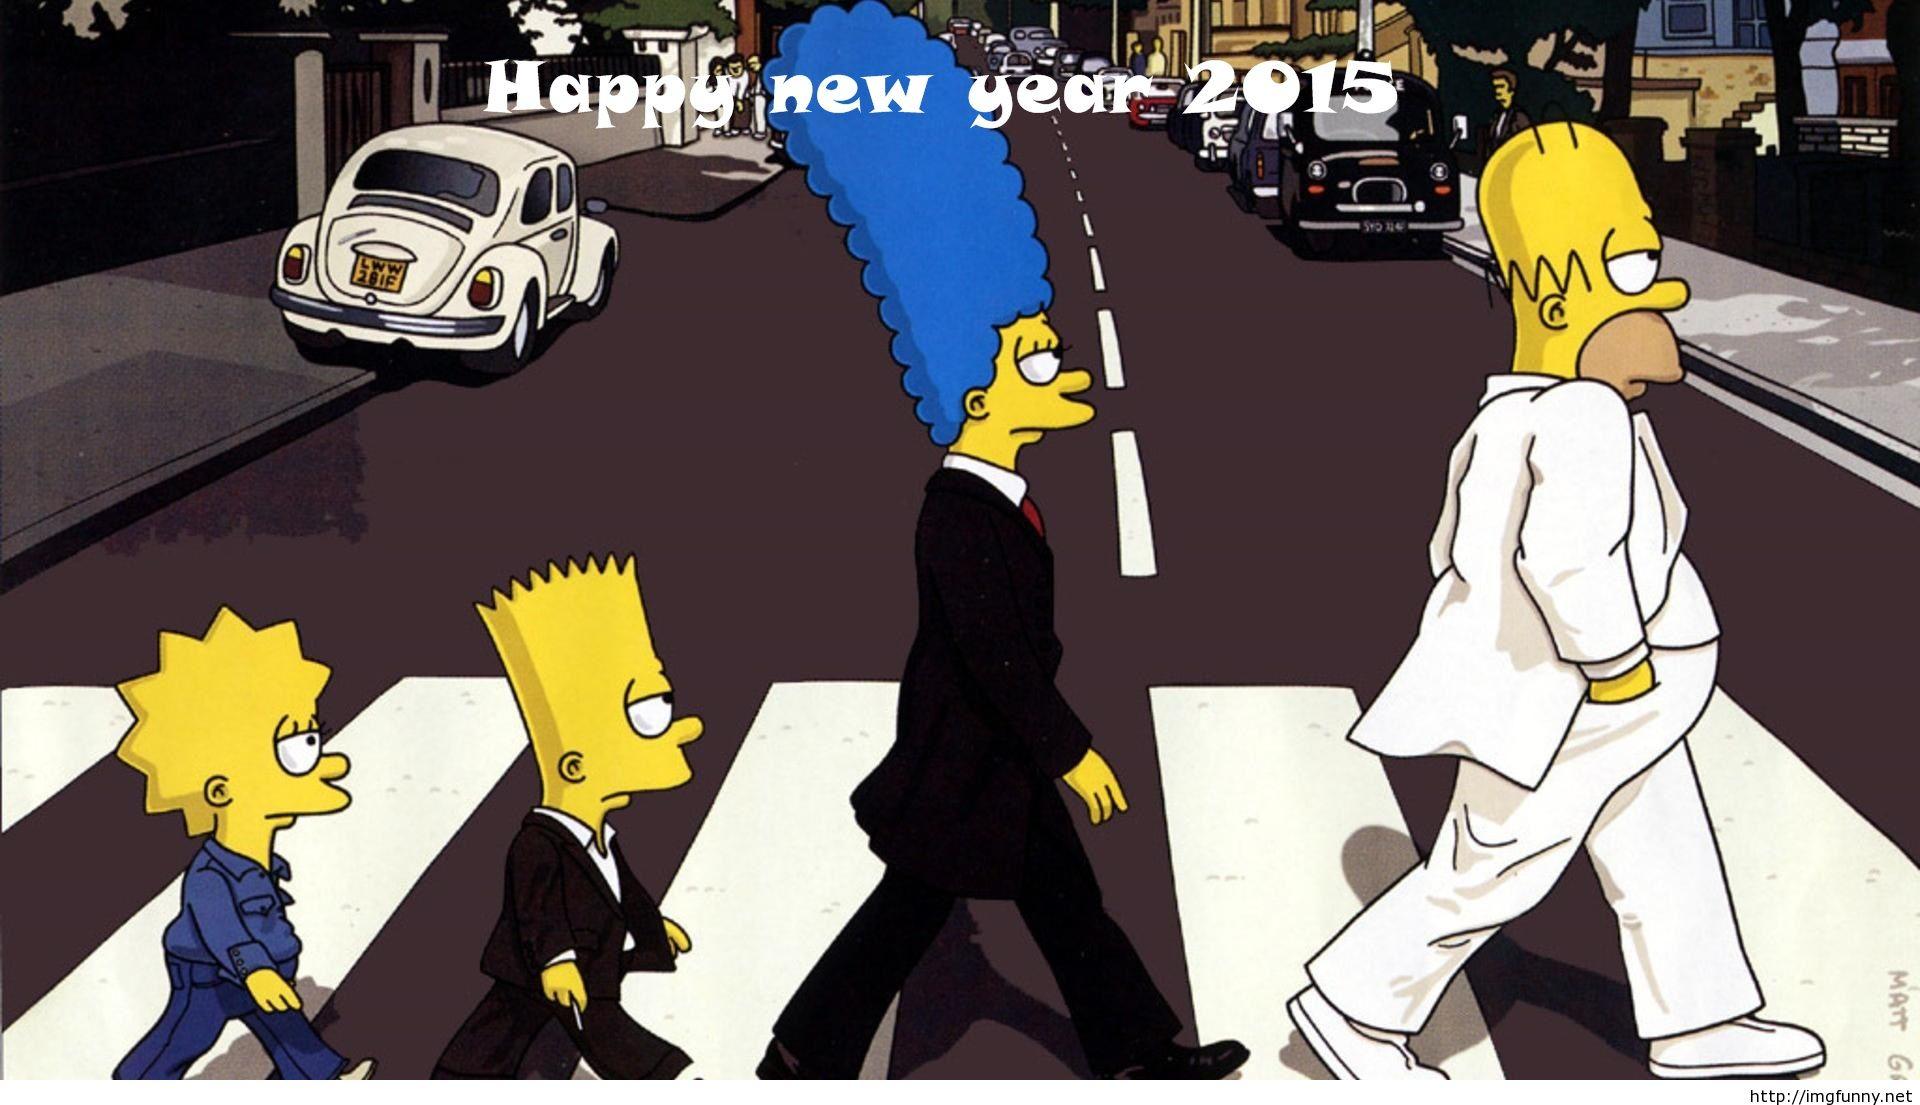 Funny simpson cartoon happy new year 2015